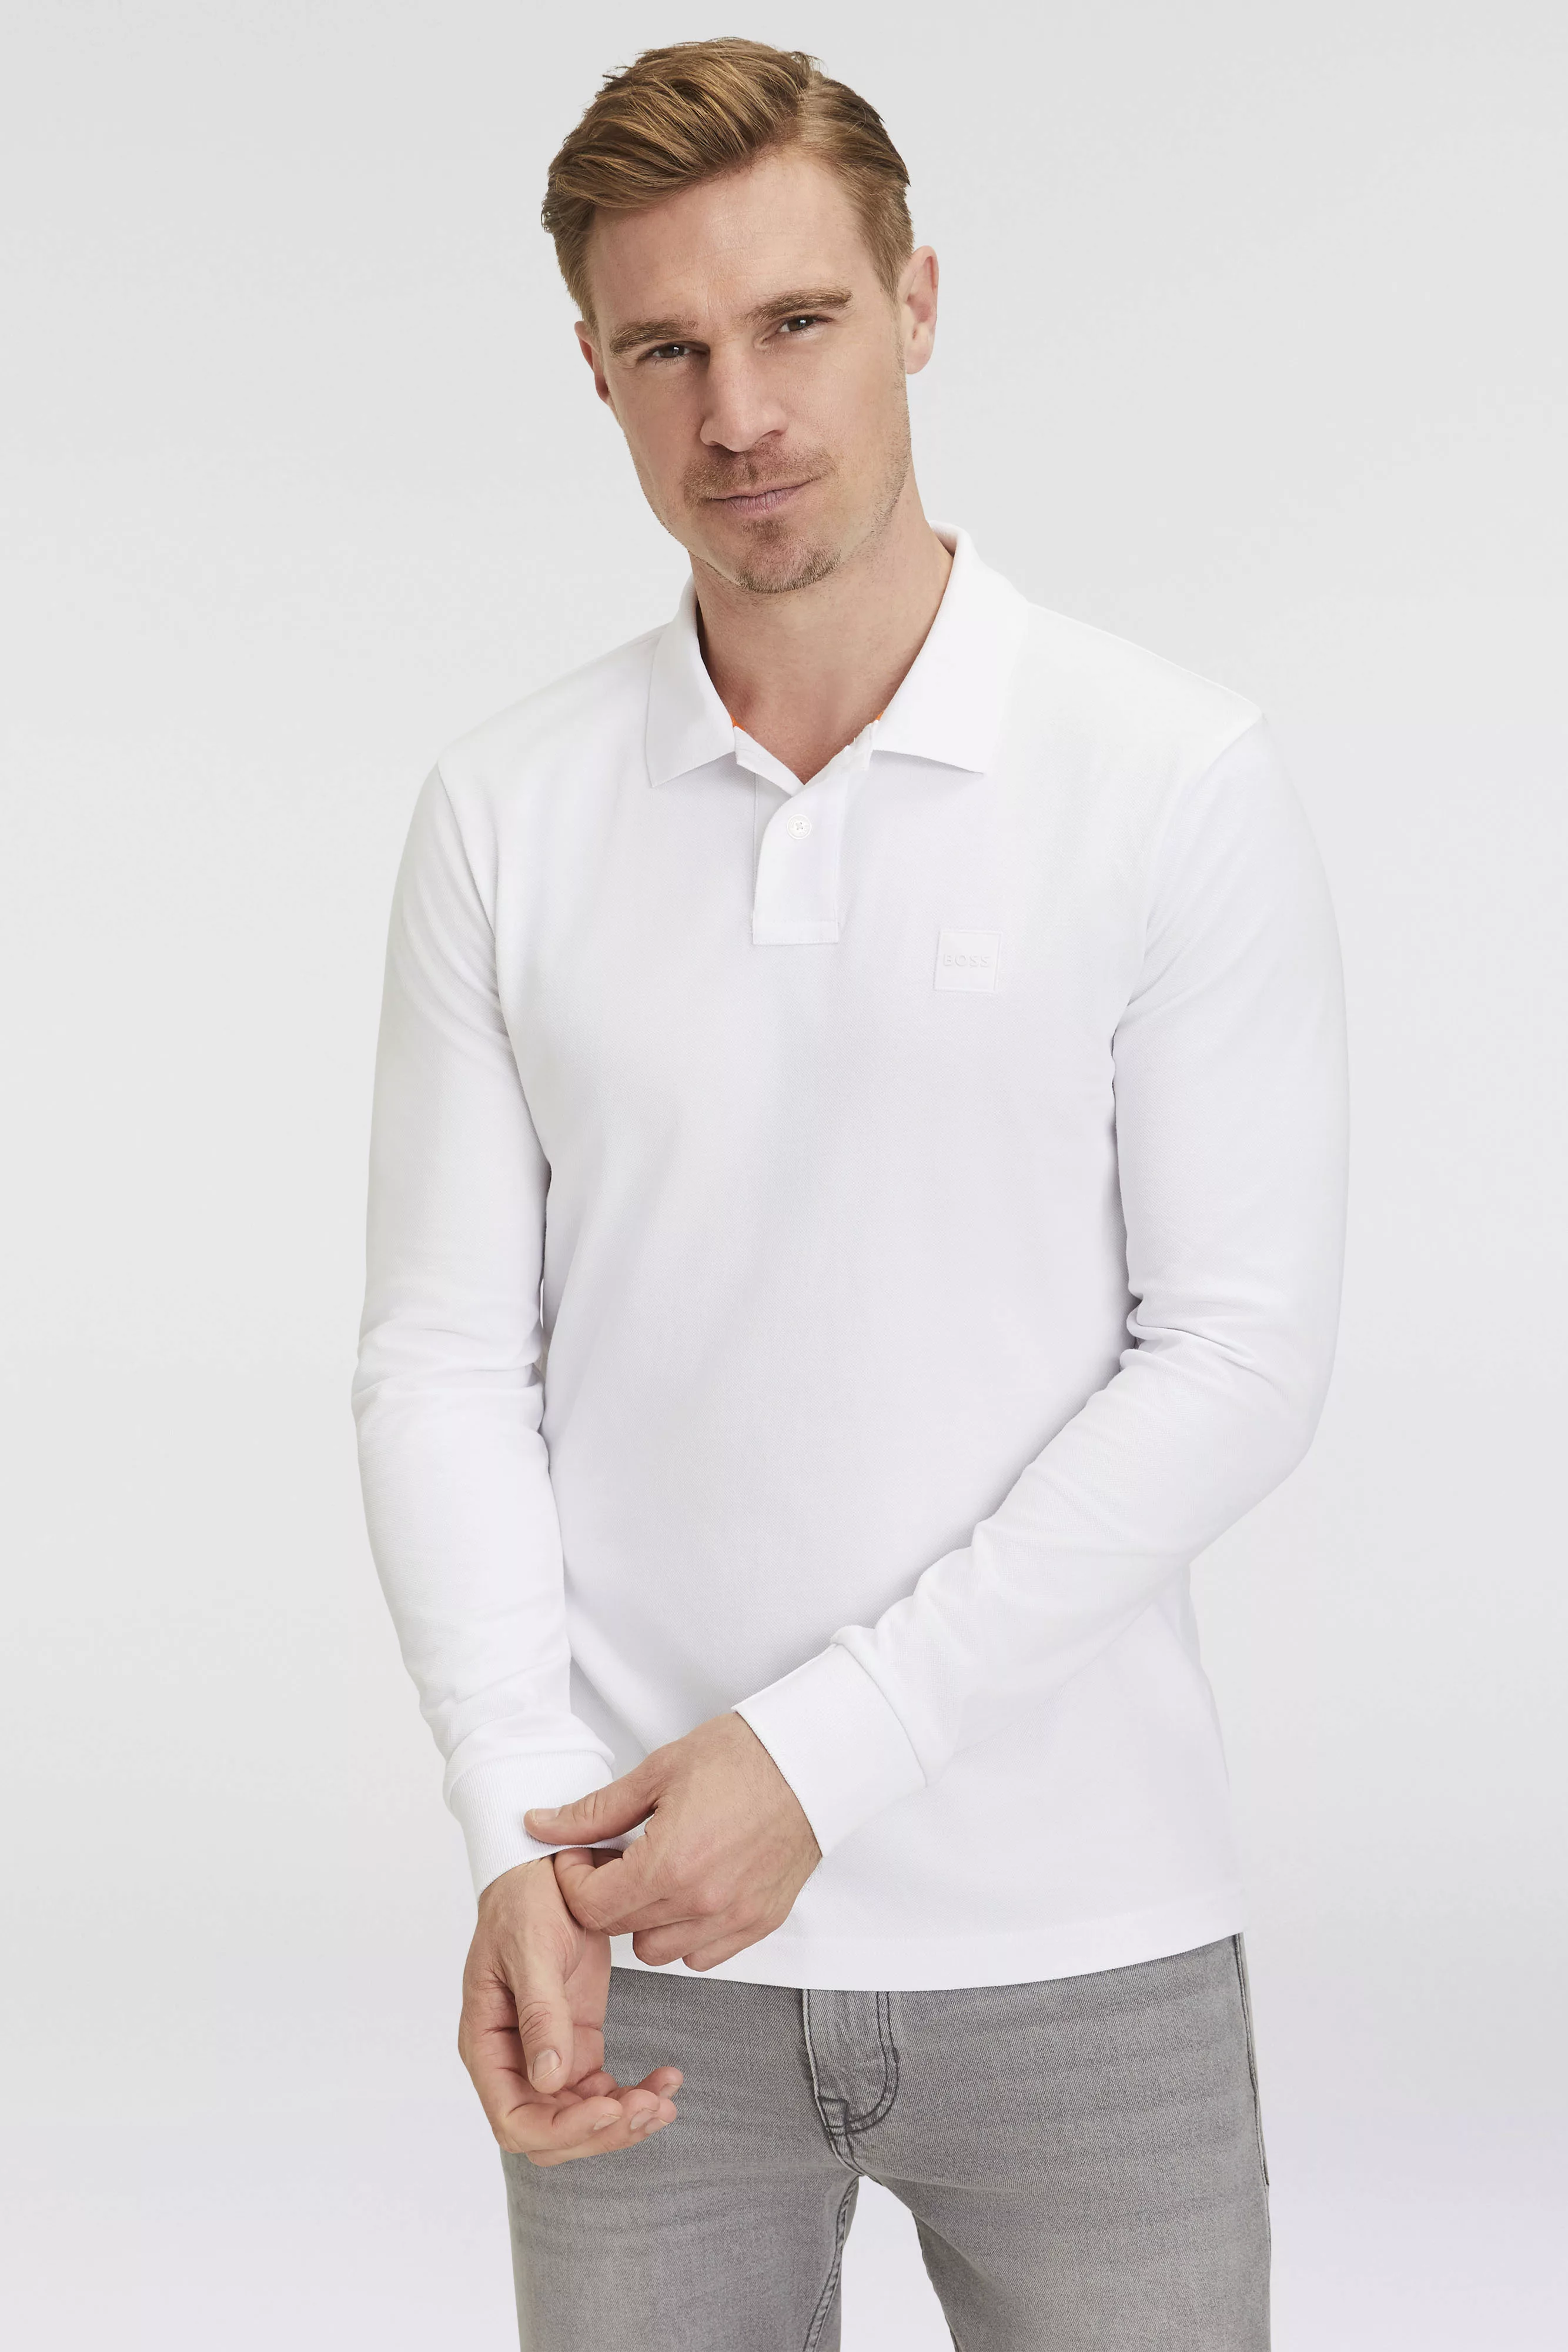 BOSS ORANGE Poloshirt "Passerby", mit BOSS-Logobadge günstig online kaufen